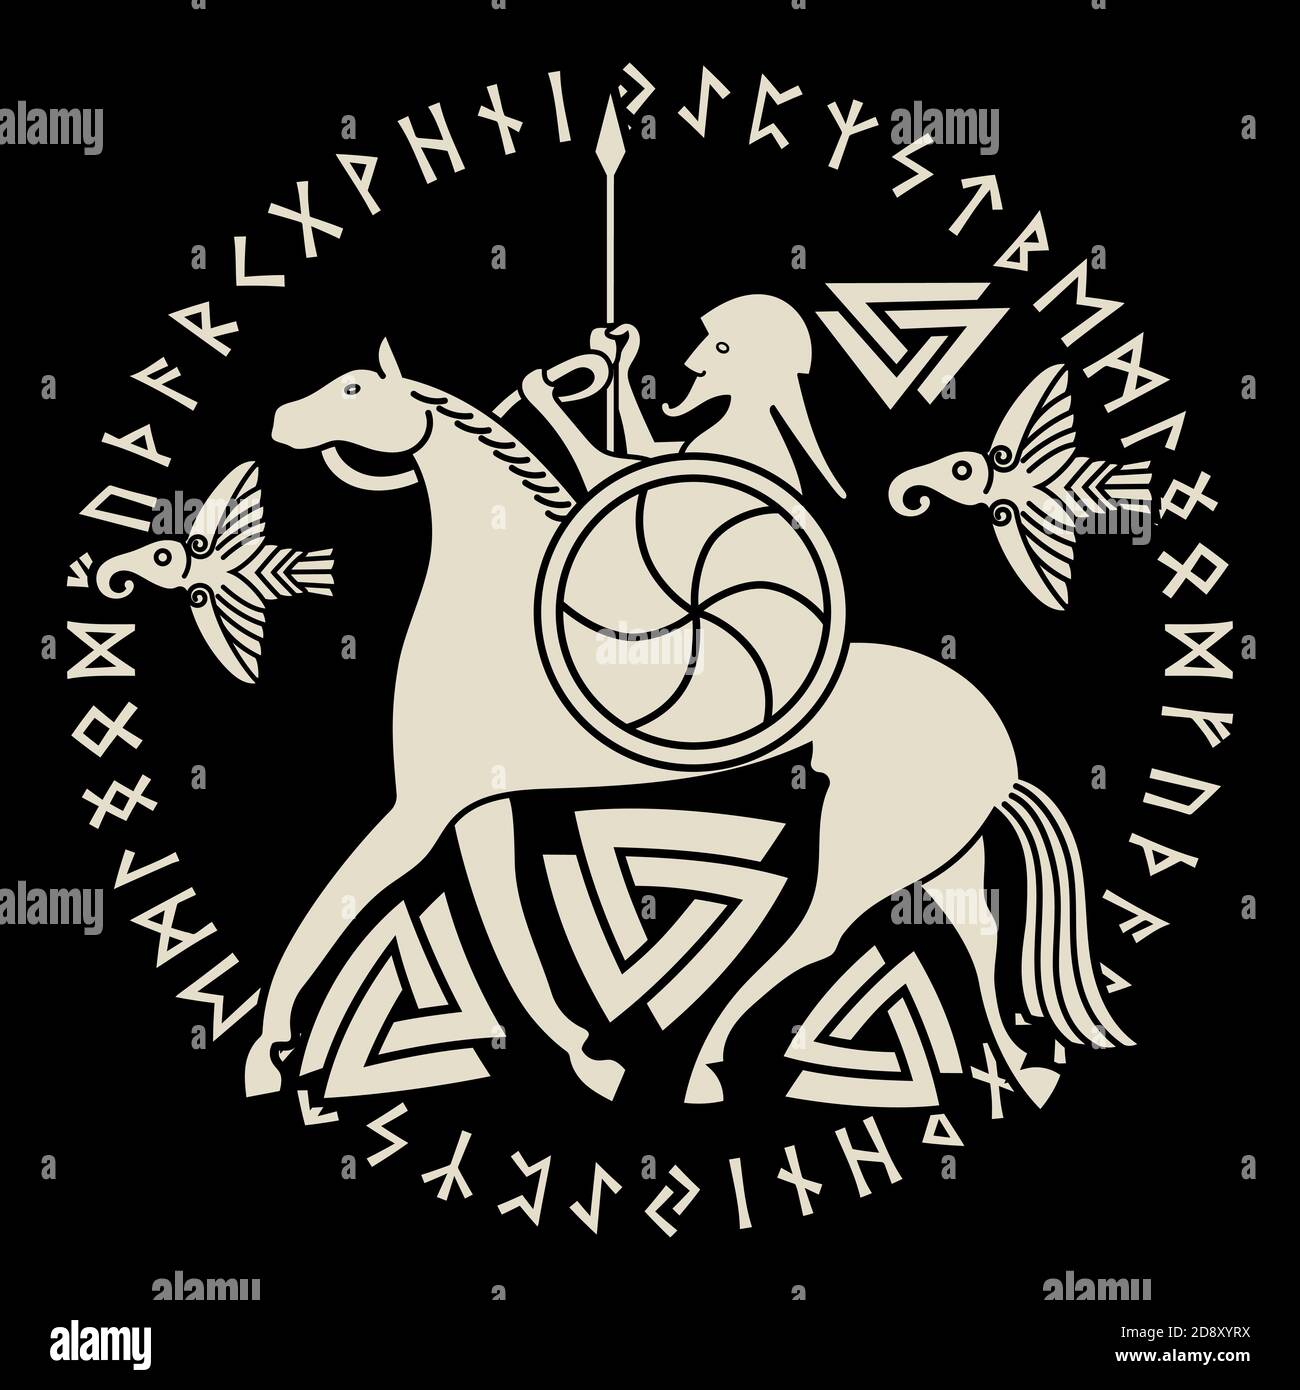 Ancien Dieu scandinave Odin, Dieu Odin sur le cheval Sleipnir et Norse runes. Illustration de la mythologie norse Illustration de Vecteur